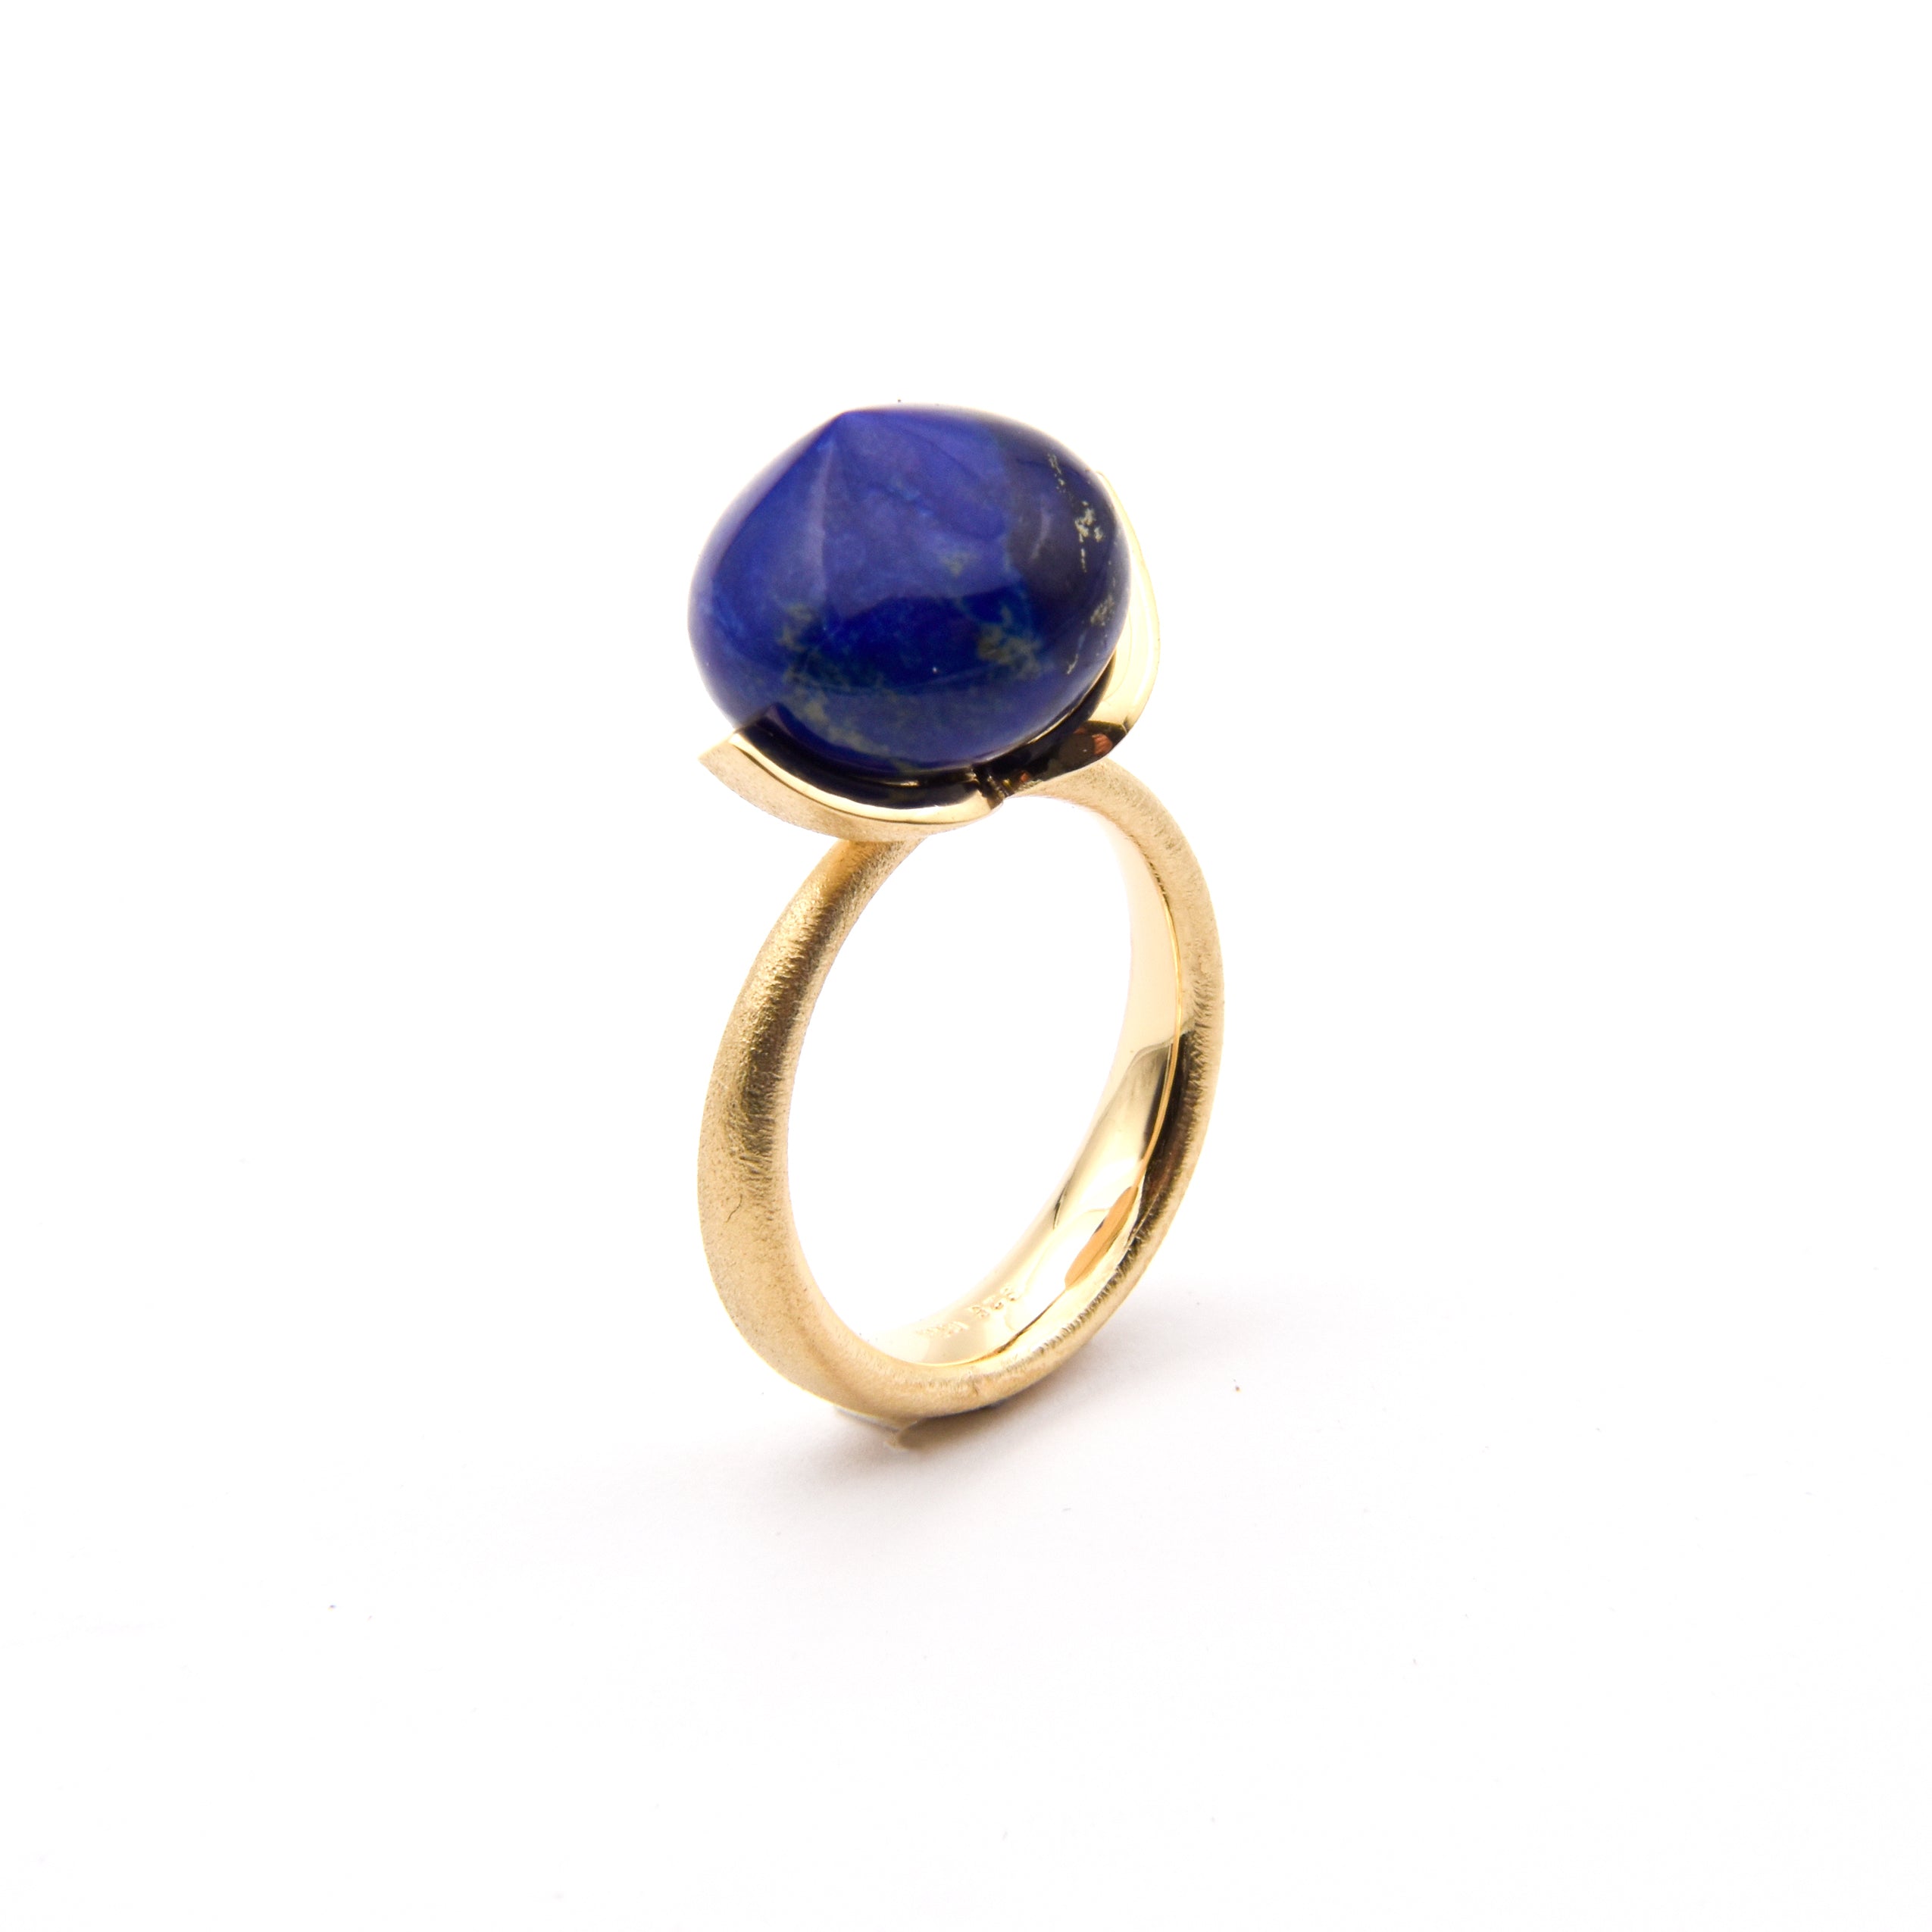 Dolce ring "stor" med lapis lazuli 925/- kr